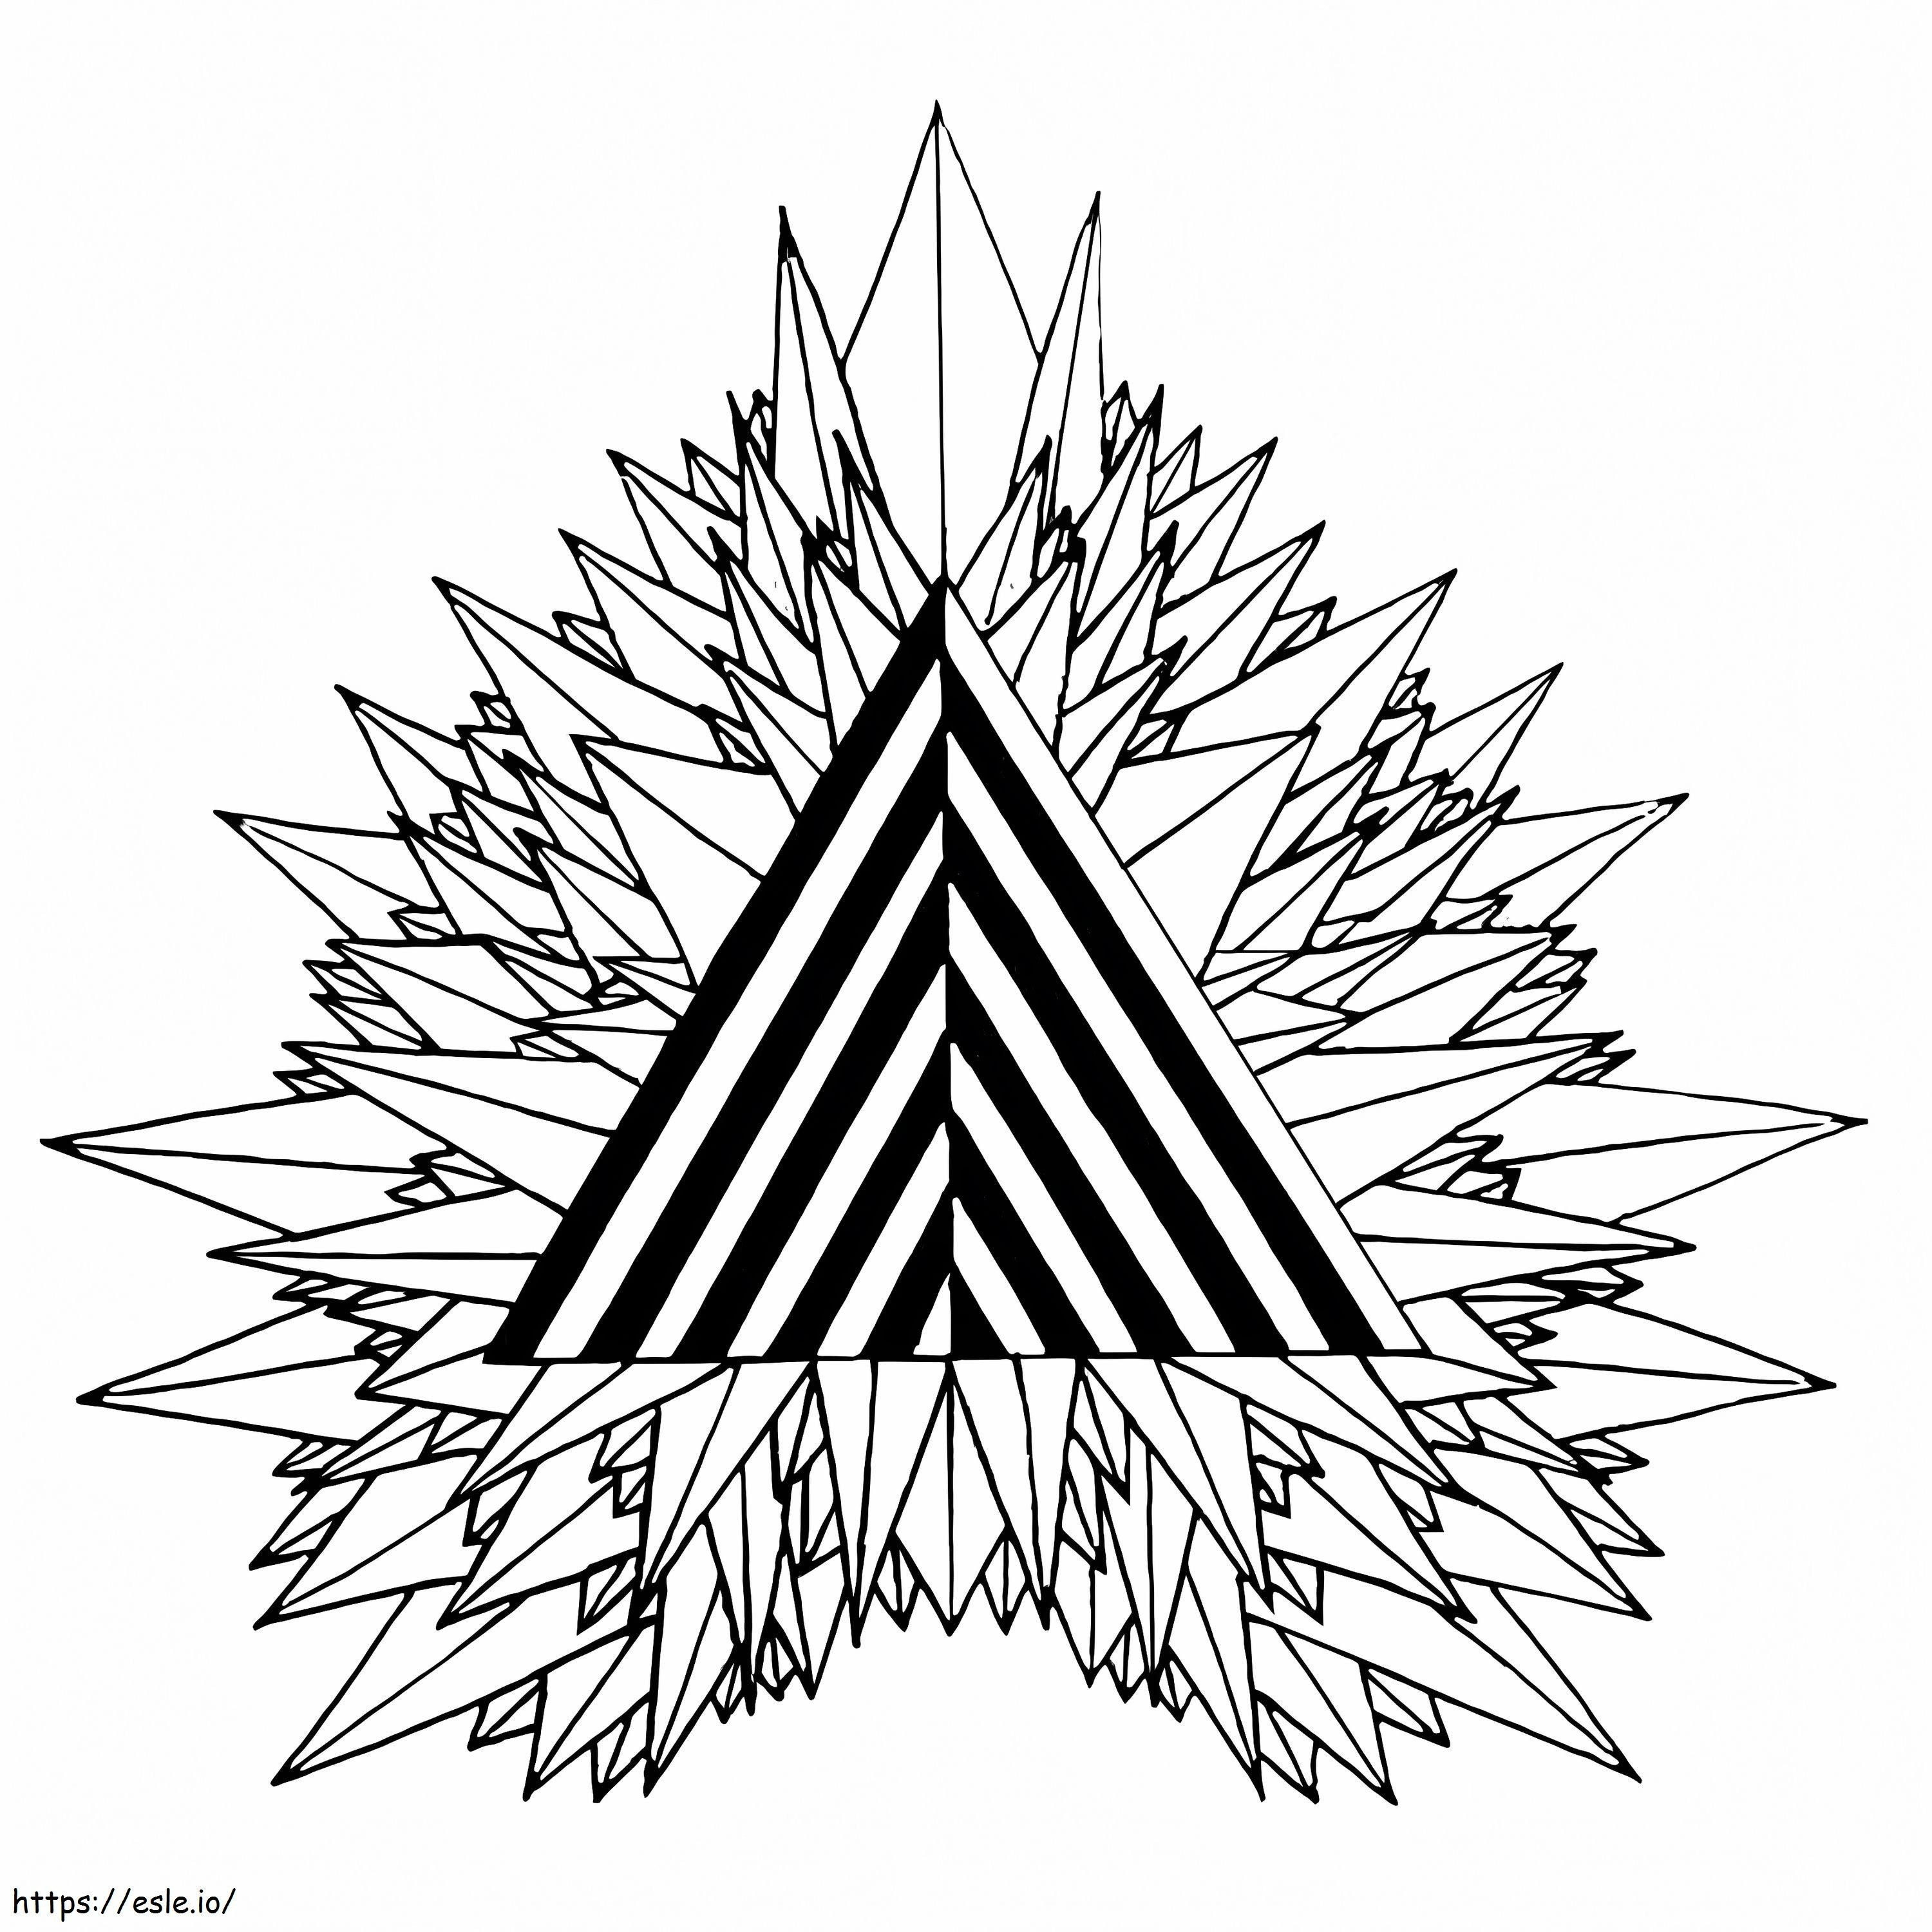 Mystisches Dreieck psychedelisch ausmalbilder